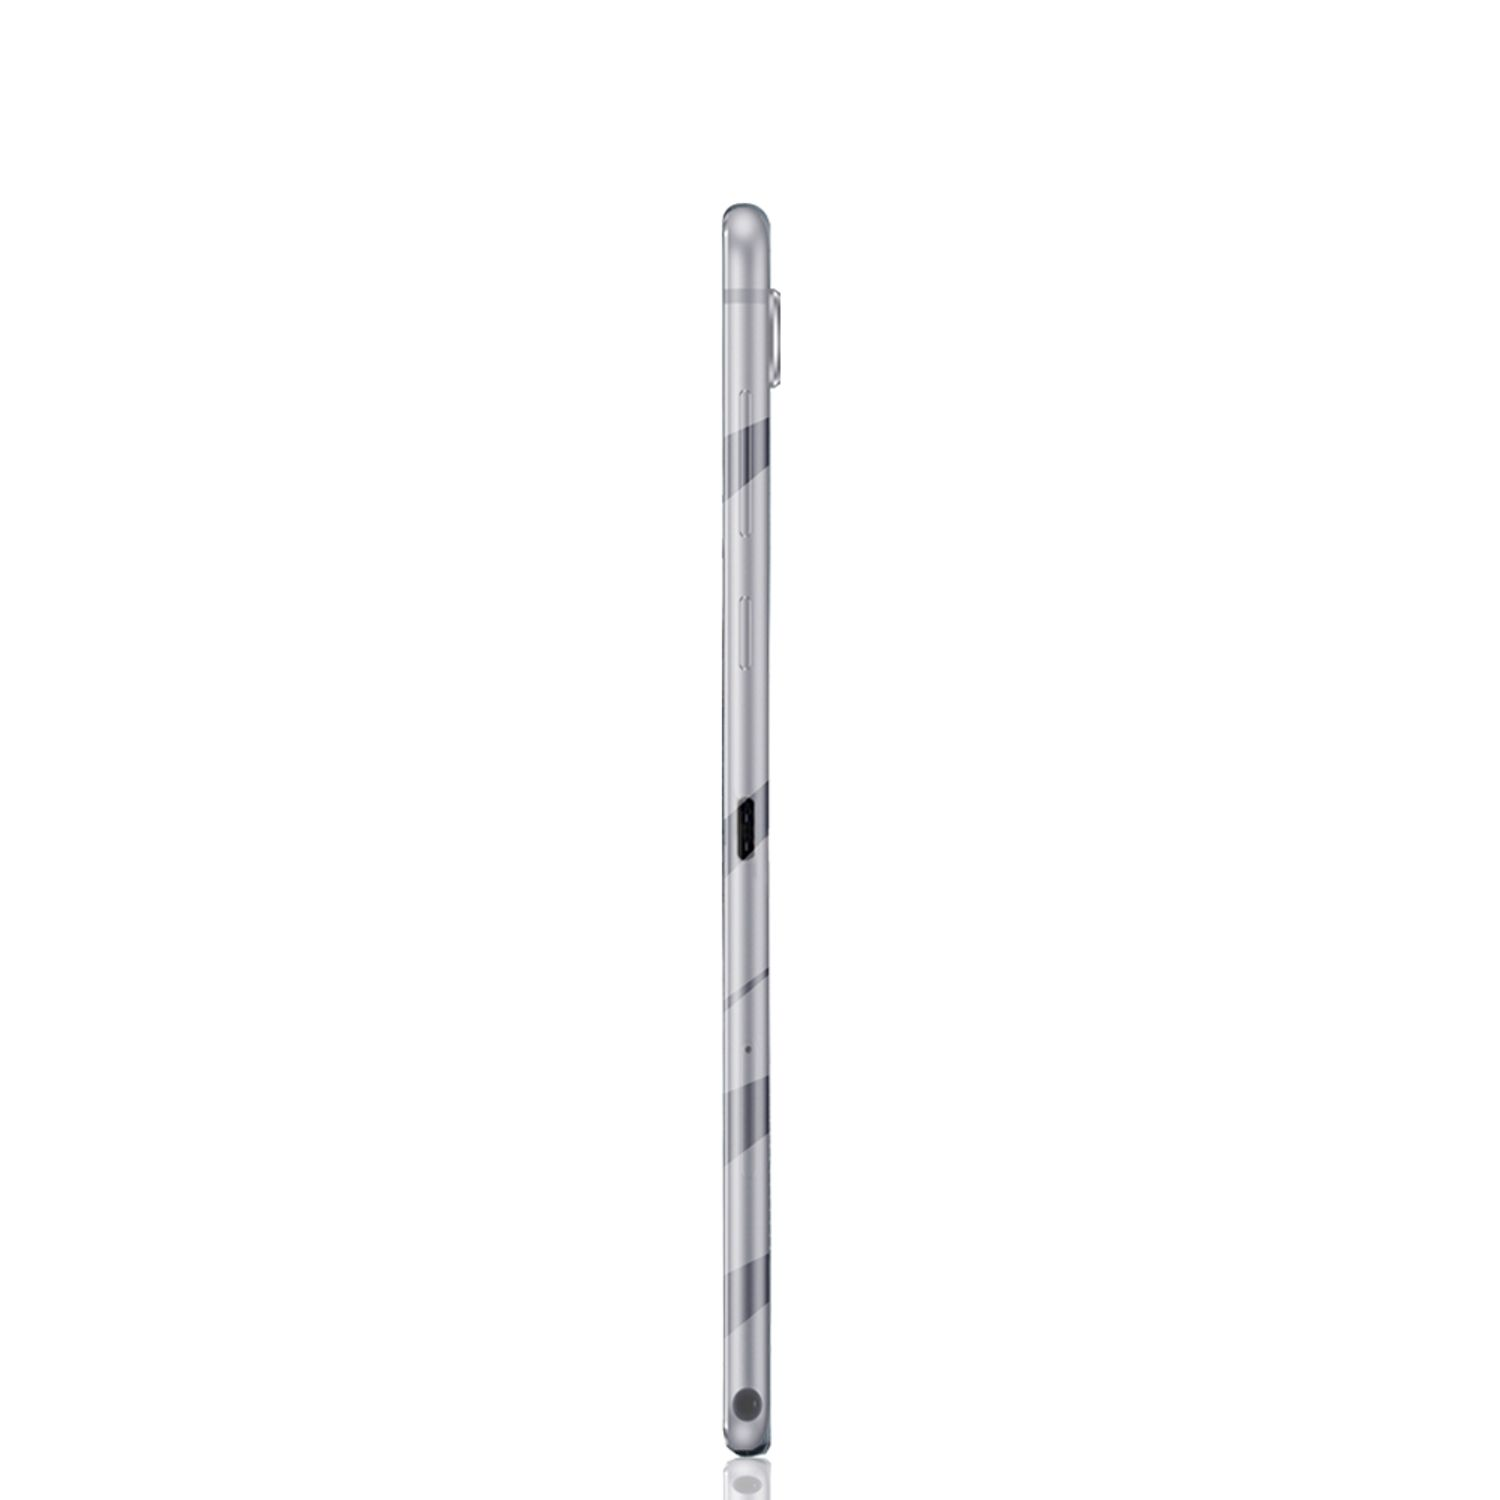 Hülle DESIGN für KÖNIG Kunststoff, Backcover Tablet Huawei Tablethülle Transparent